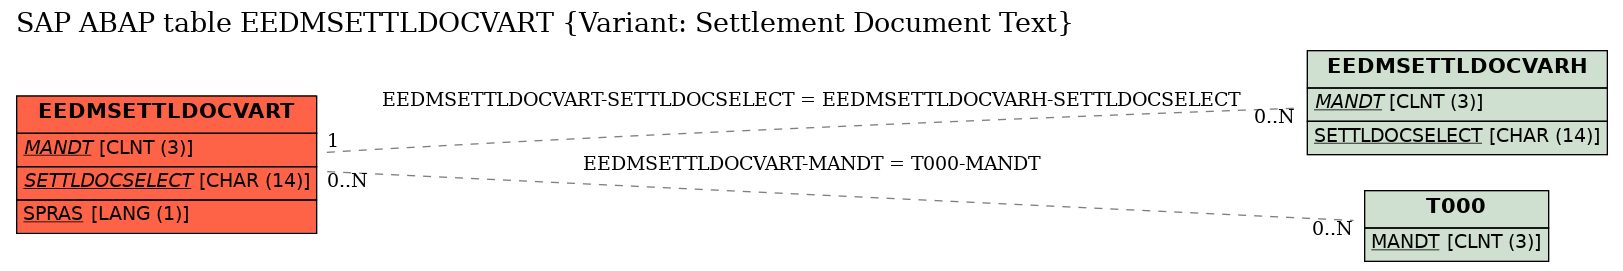 E-R Diagram for table EEDMSETTLDOCVART (Variant: Settlement Document Text)